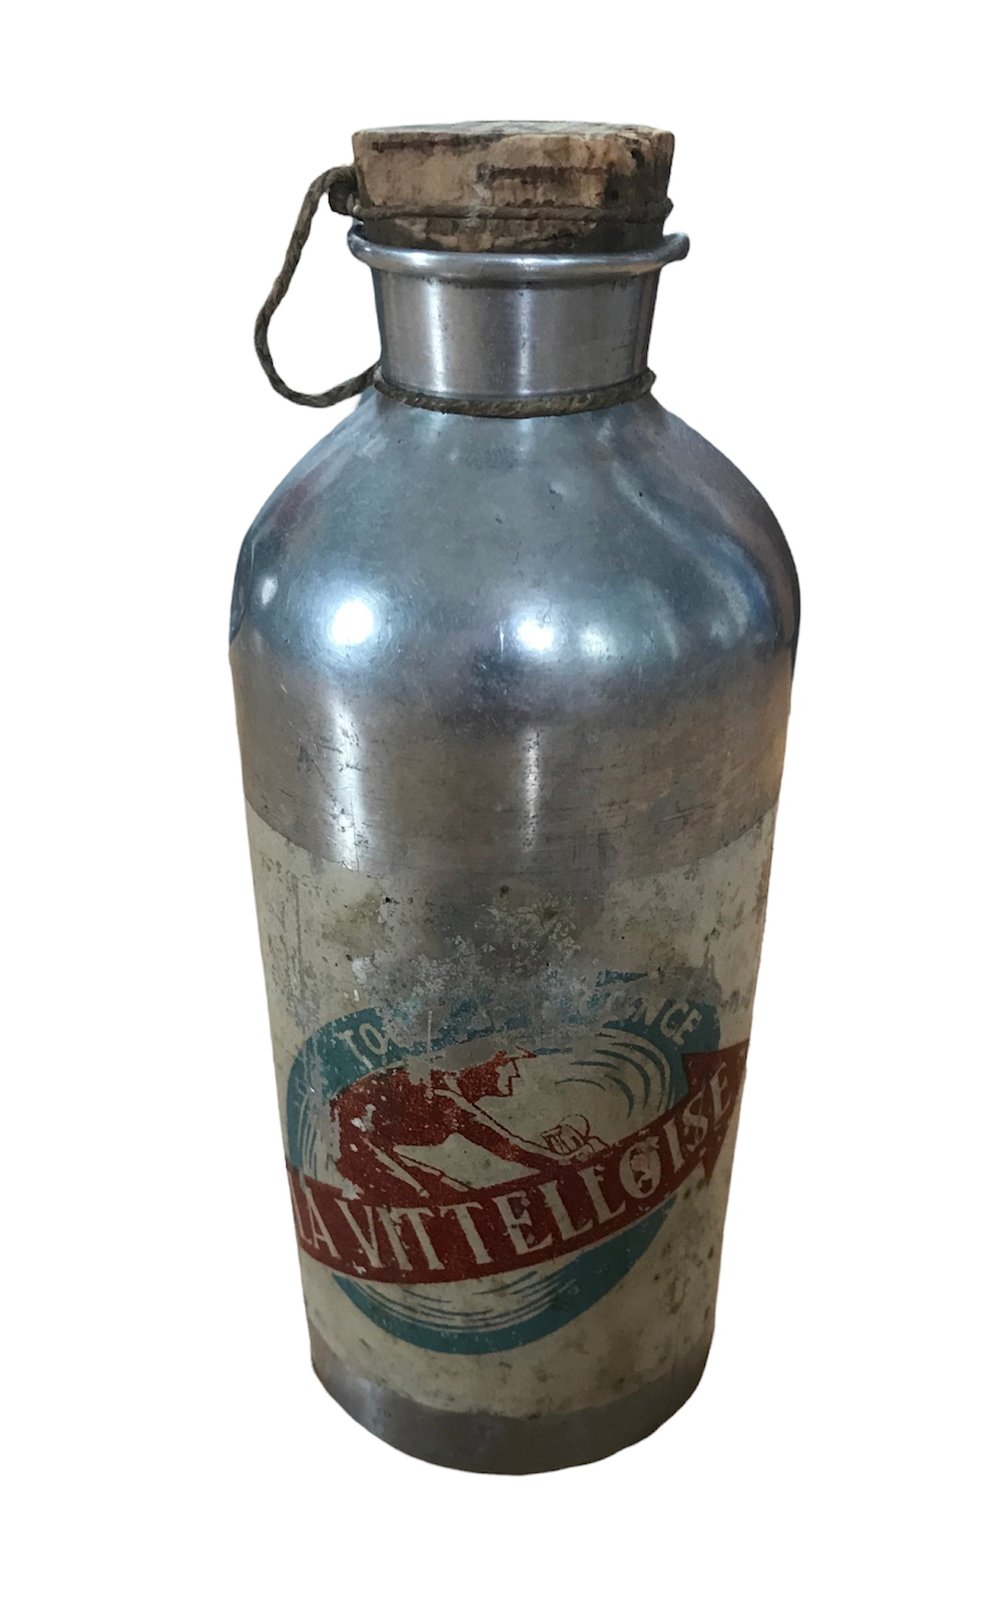 Vintage 1950-53 ðŸ‡«ðŸ‡· Tour de France / La Vitelloise water bottle